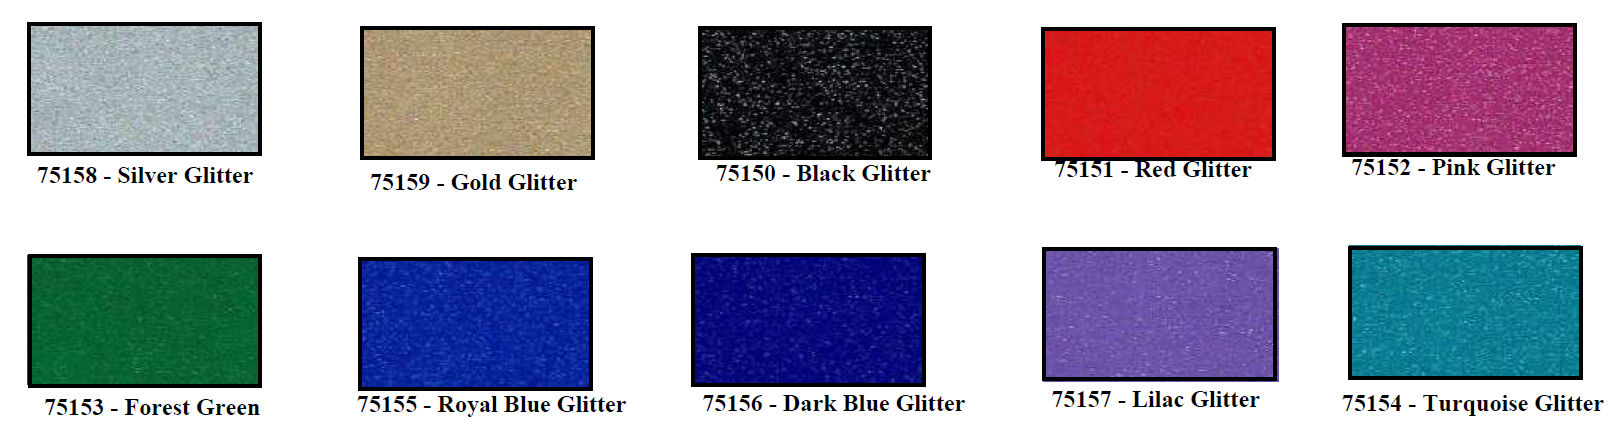 Glitter colors - Glitter Vinyl - SMF 4mil Cast Vinyl